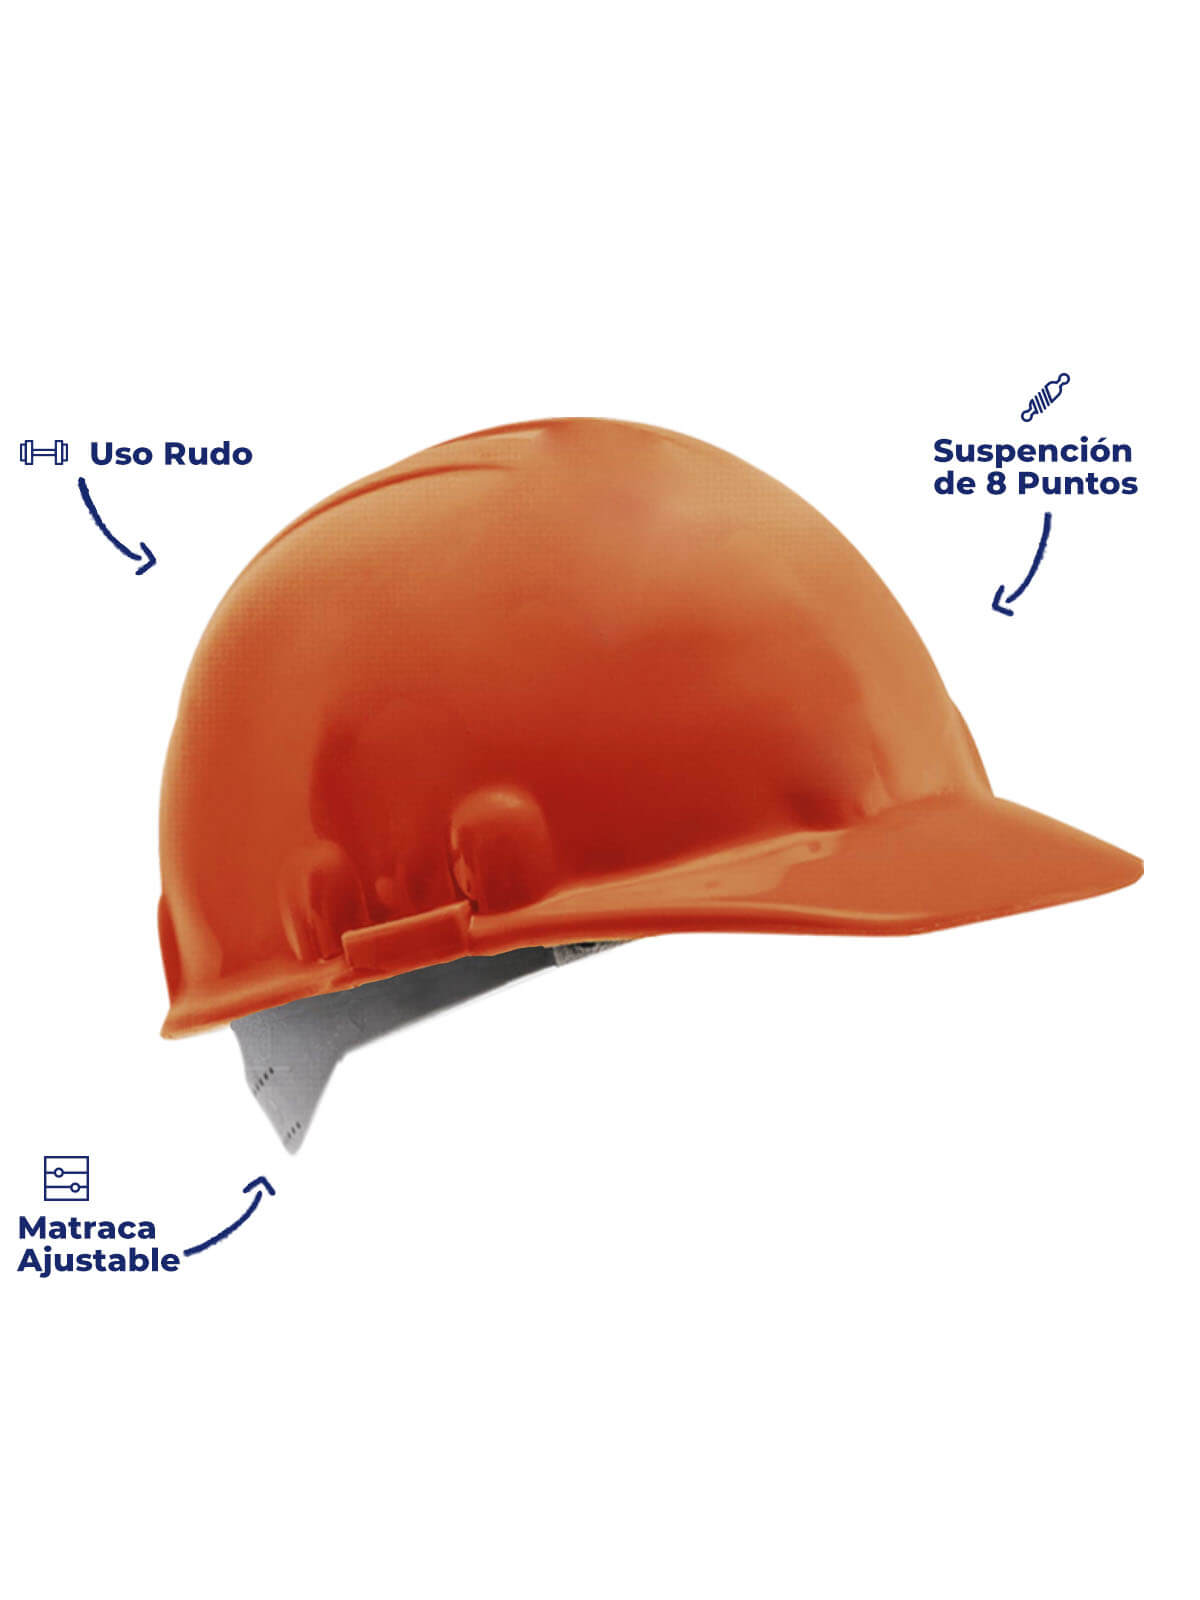 partes del casco de seguridad industrial